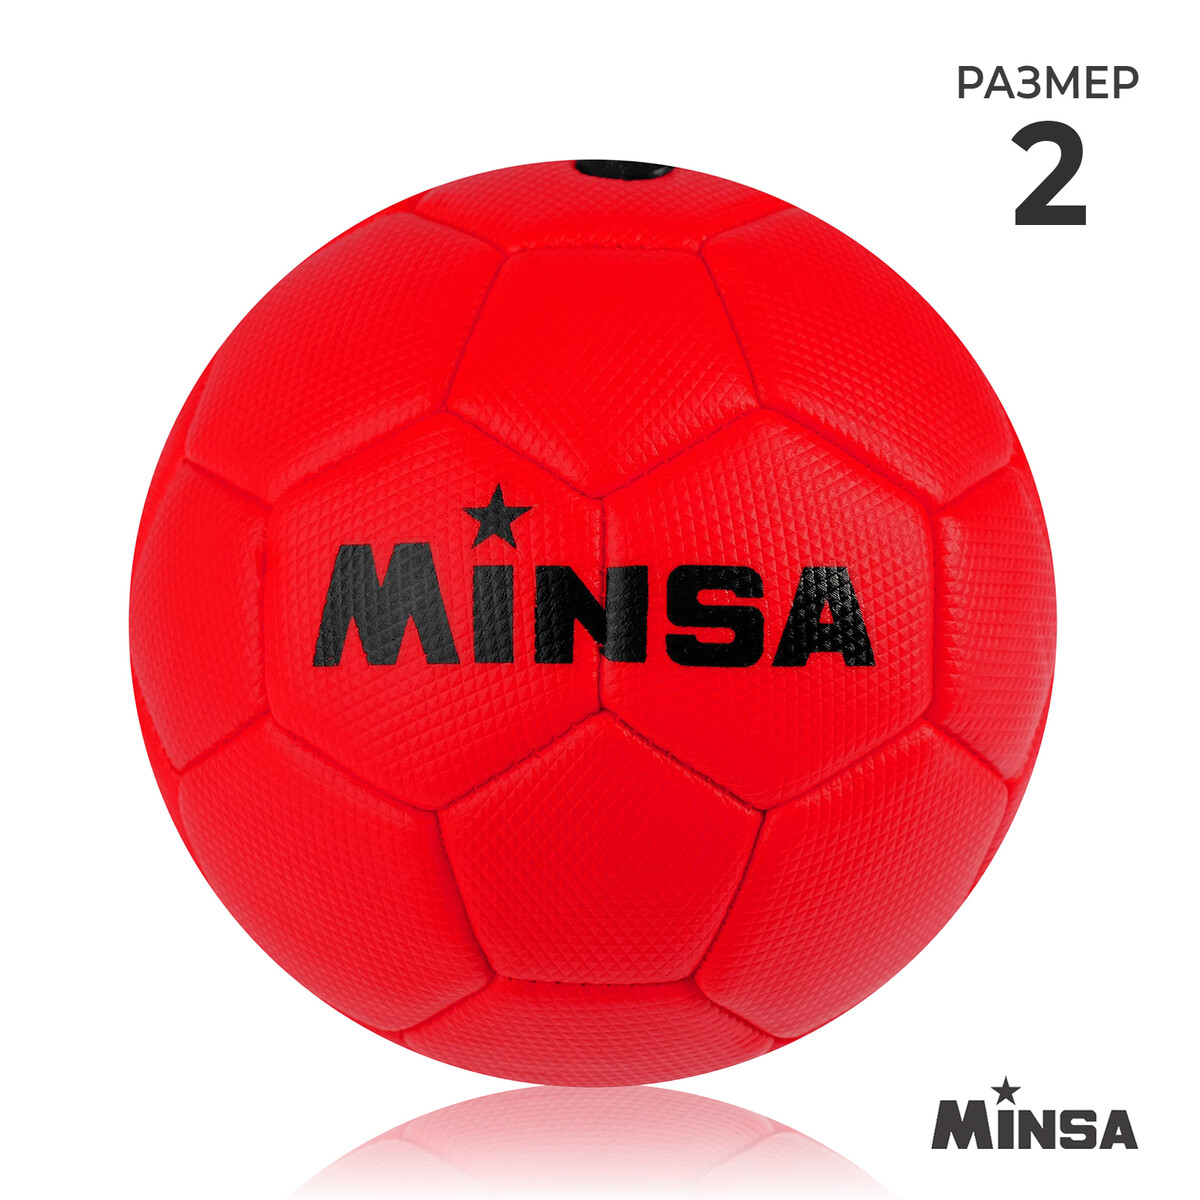 Мяч футбольный minsa, пвх, машинная сшивка, 32 панели, р. 2 мяч футбольный minsa spin tpu машинная сшивка 32 панели р 5